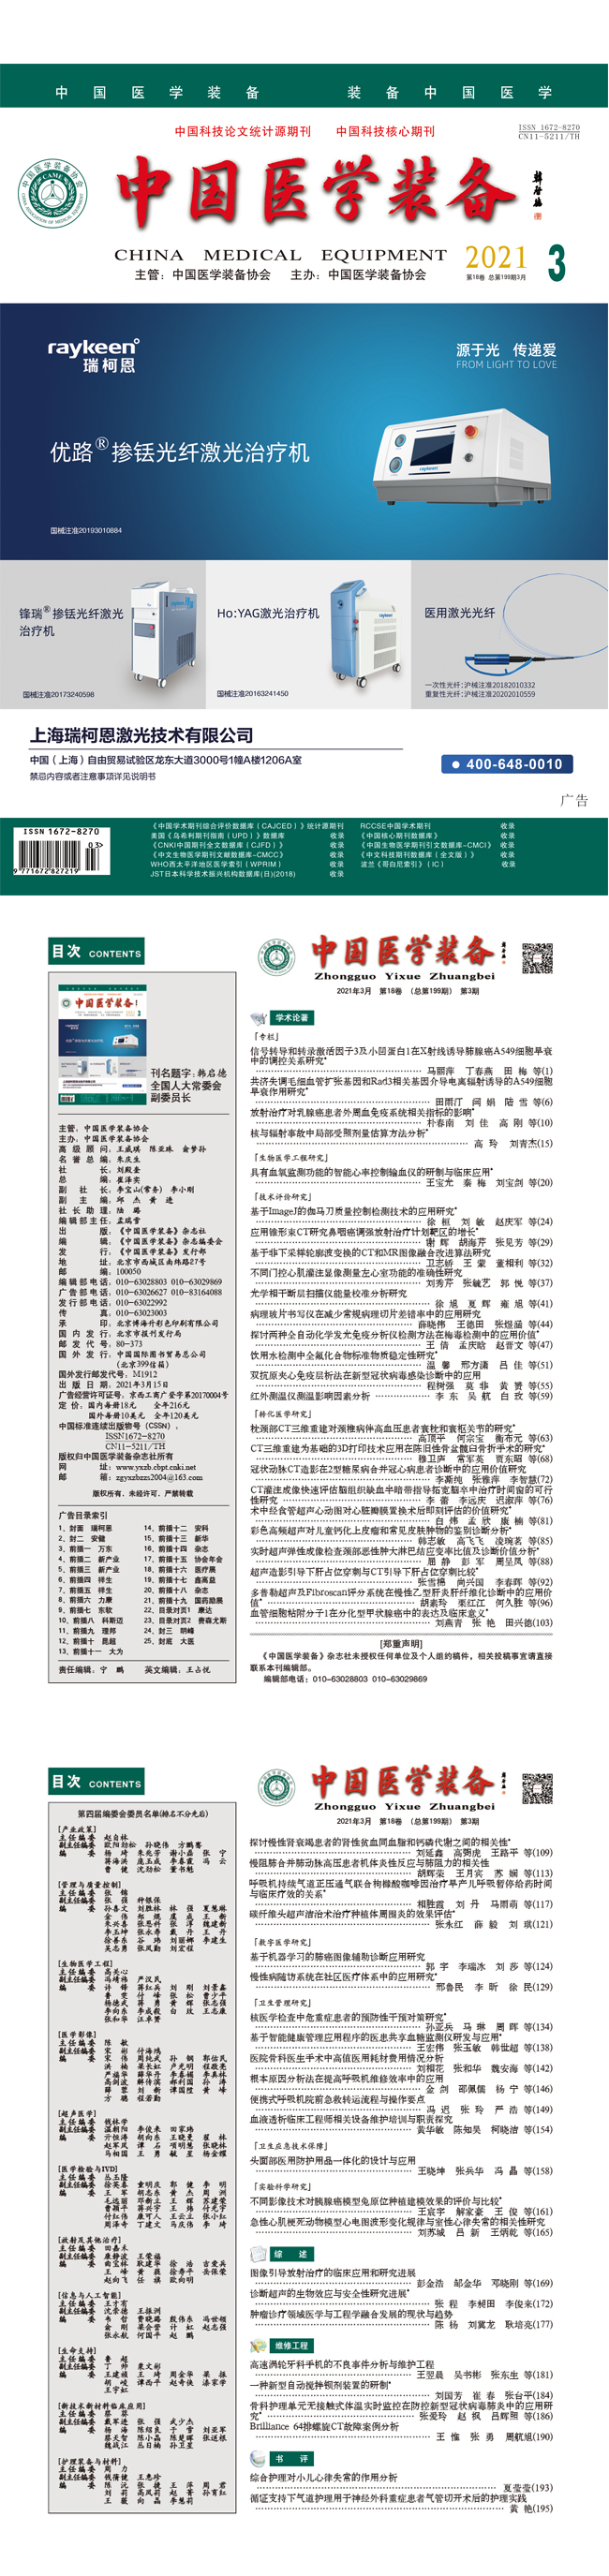 《中国医学装备》2021年3期出版(图1)